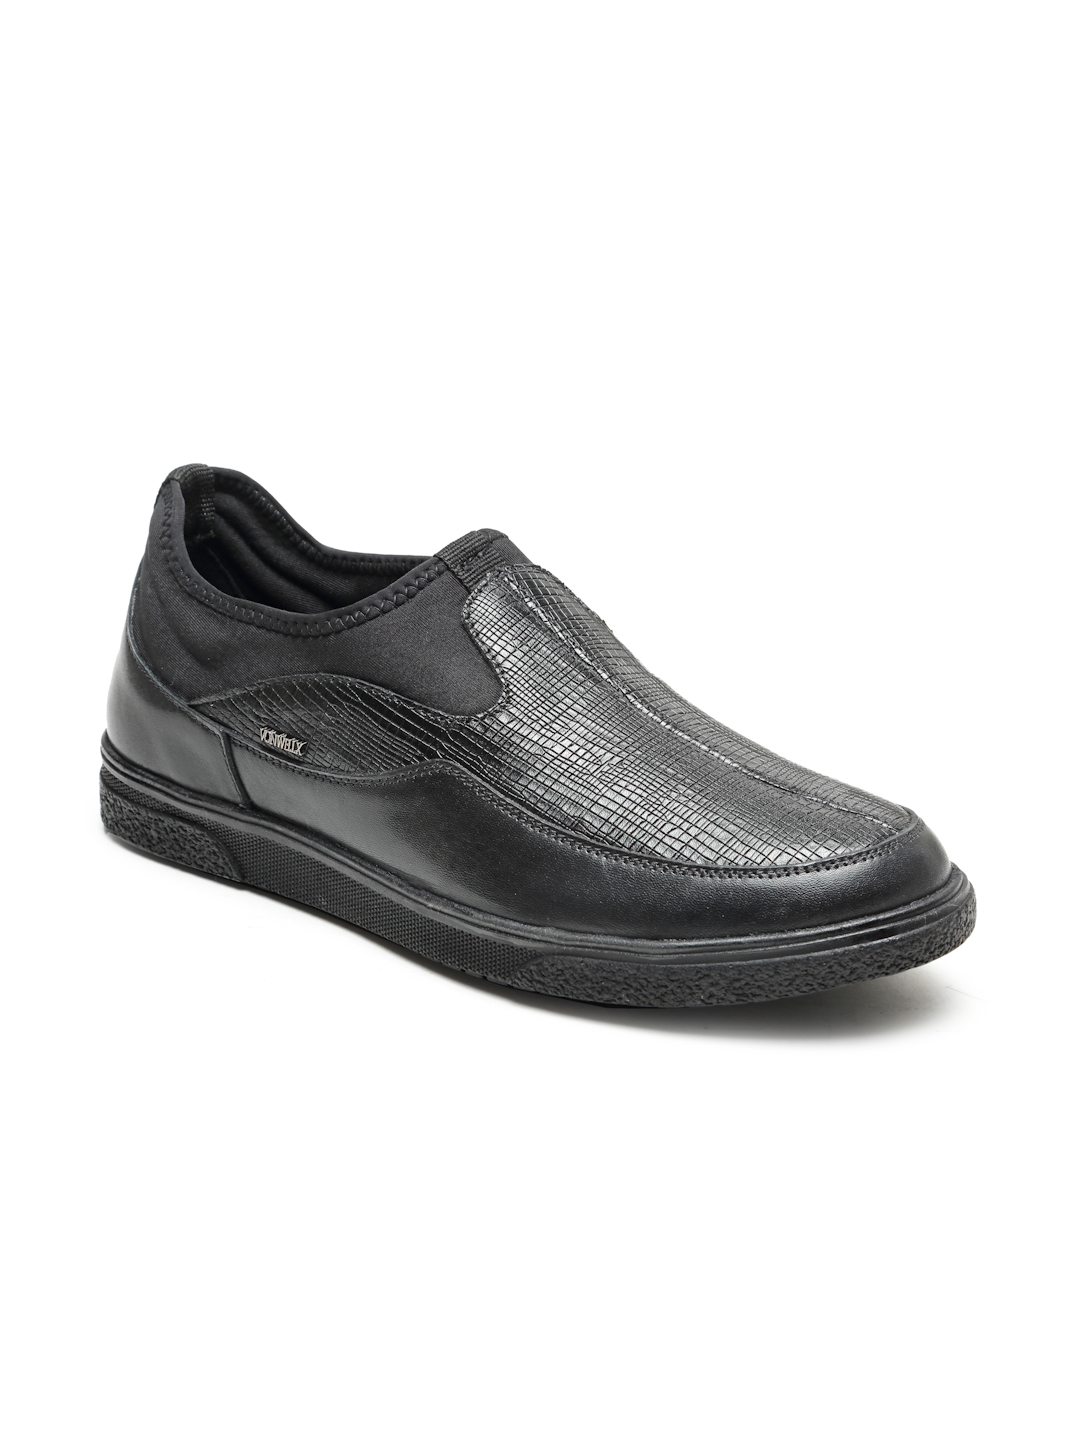 Buy Von Wellx Germany Comfort Men's Black Casual Loafers Everett Online in Surat